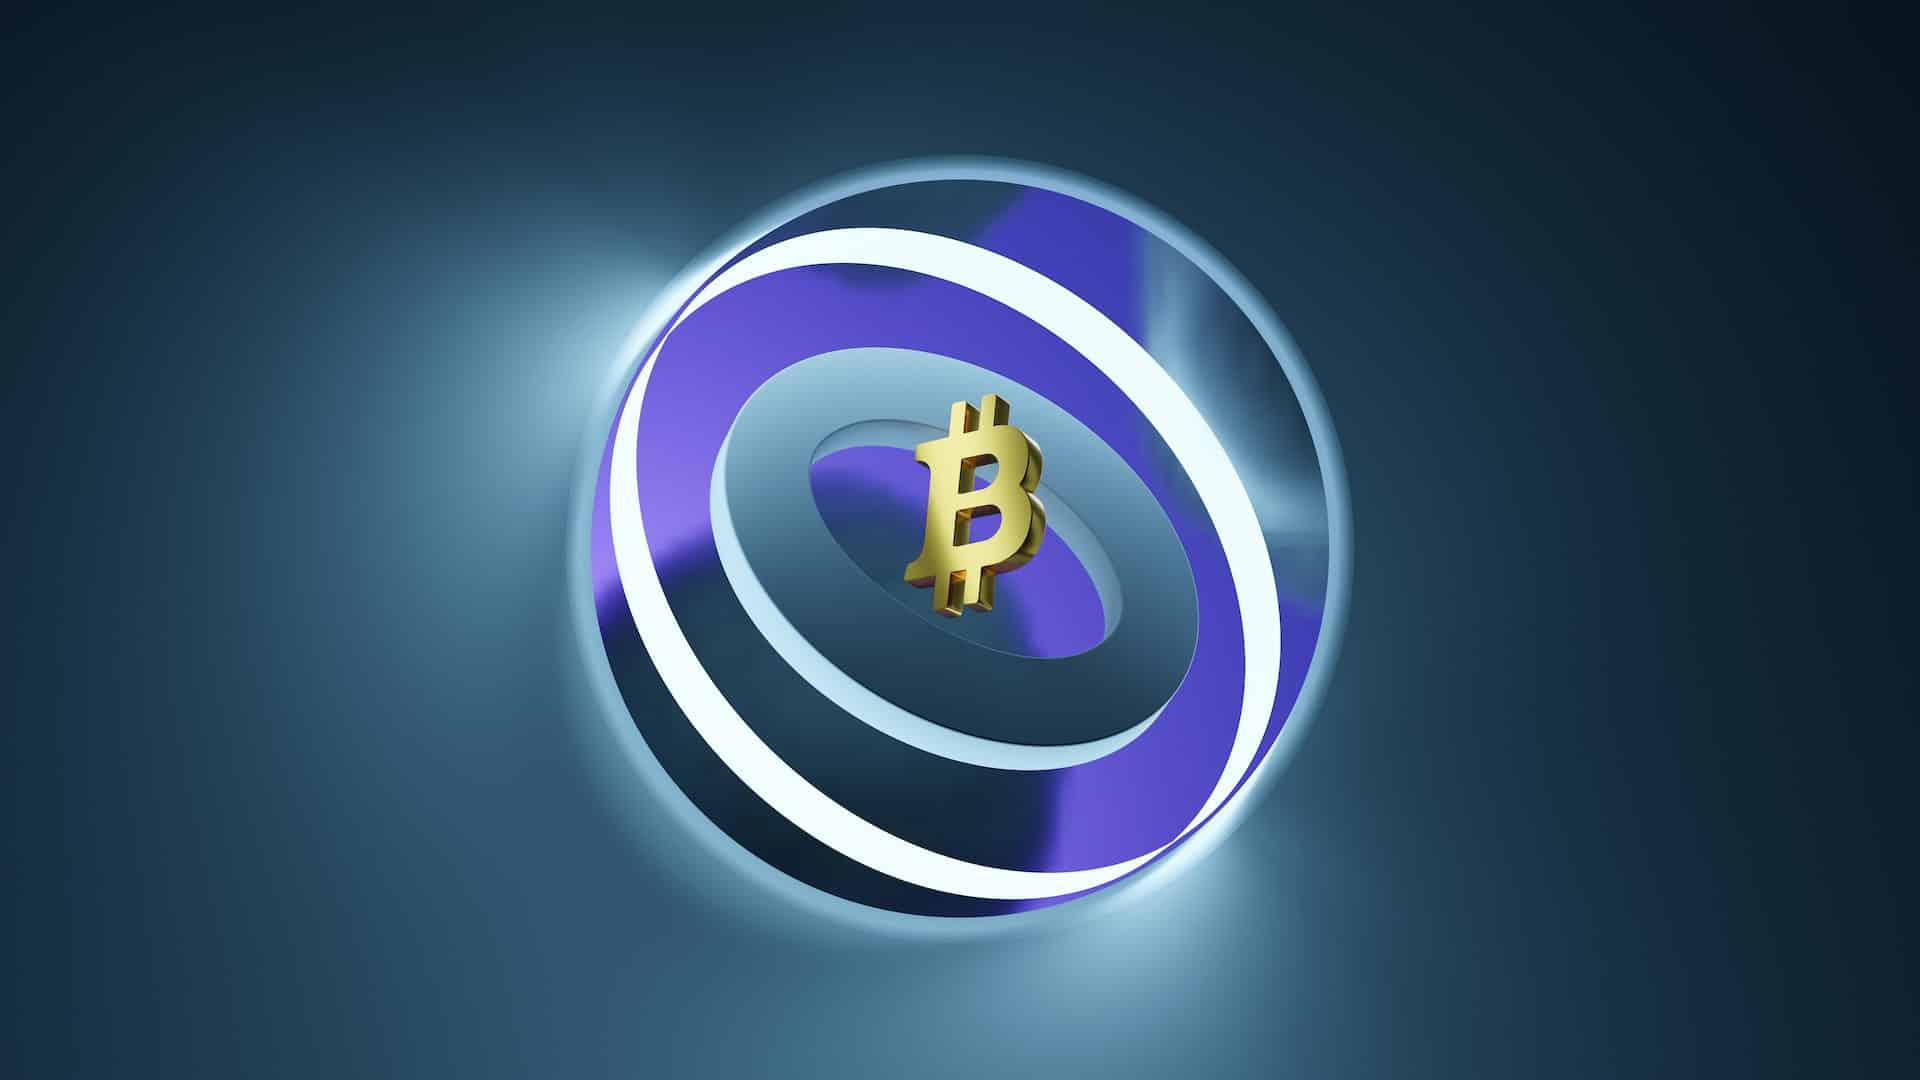 Bitcoin: Magic Eden Opens Its Doors For BTC Ordinals